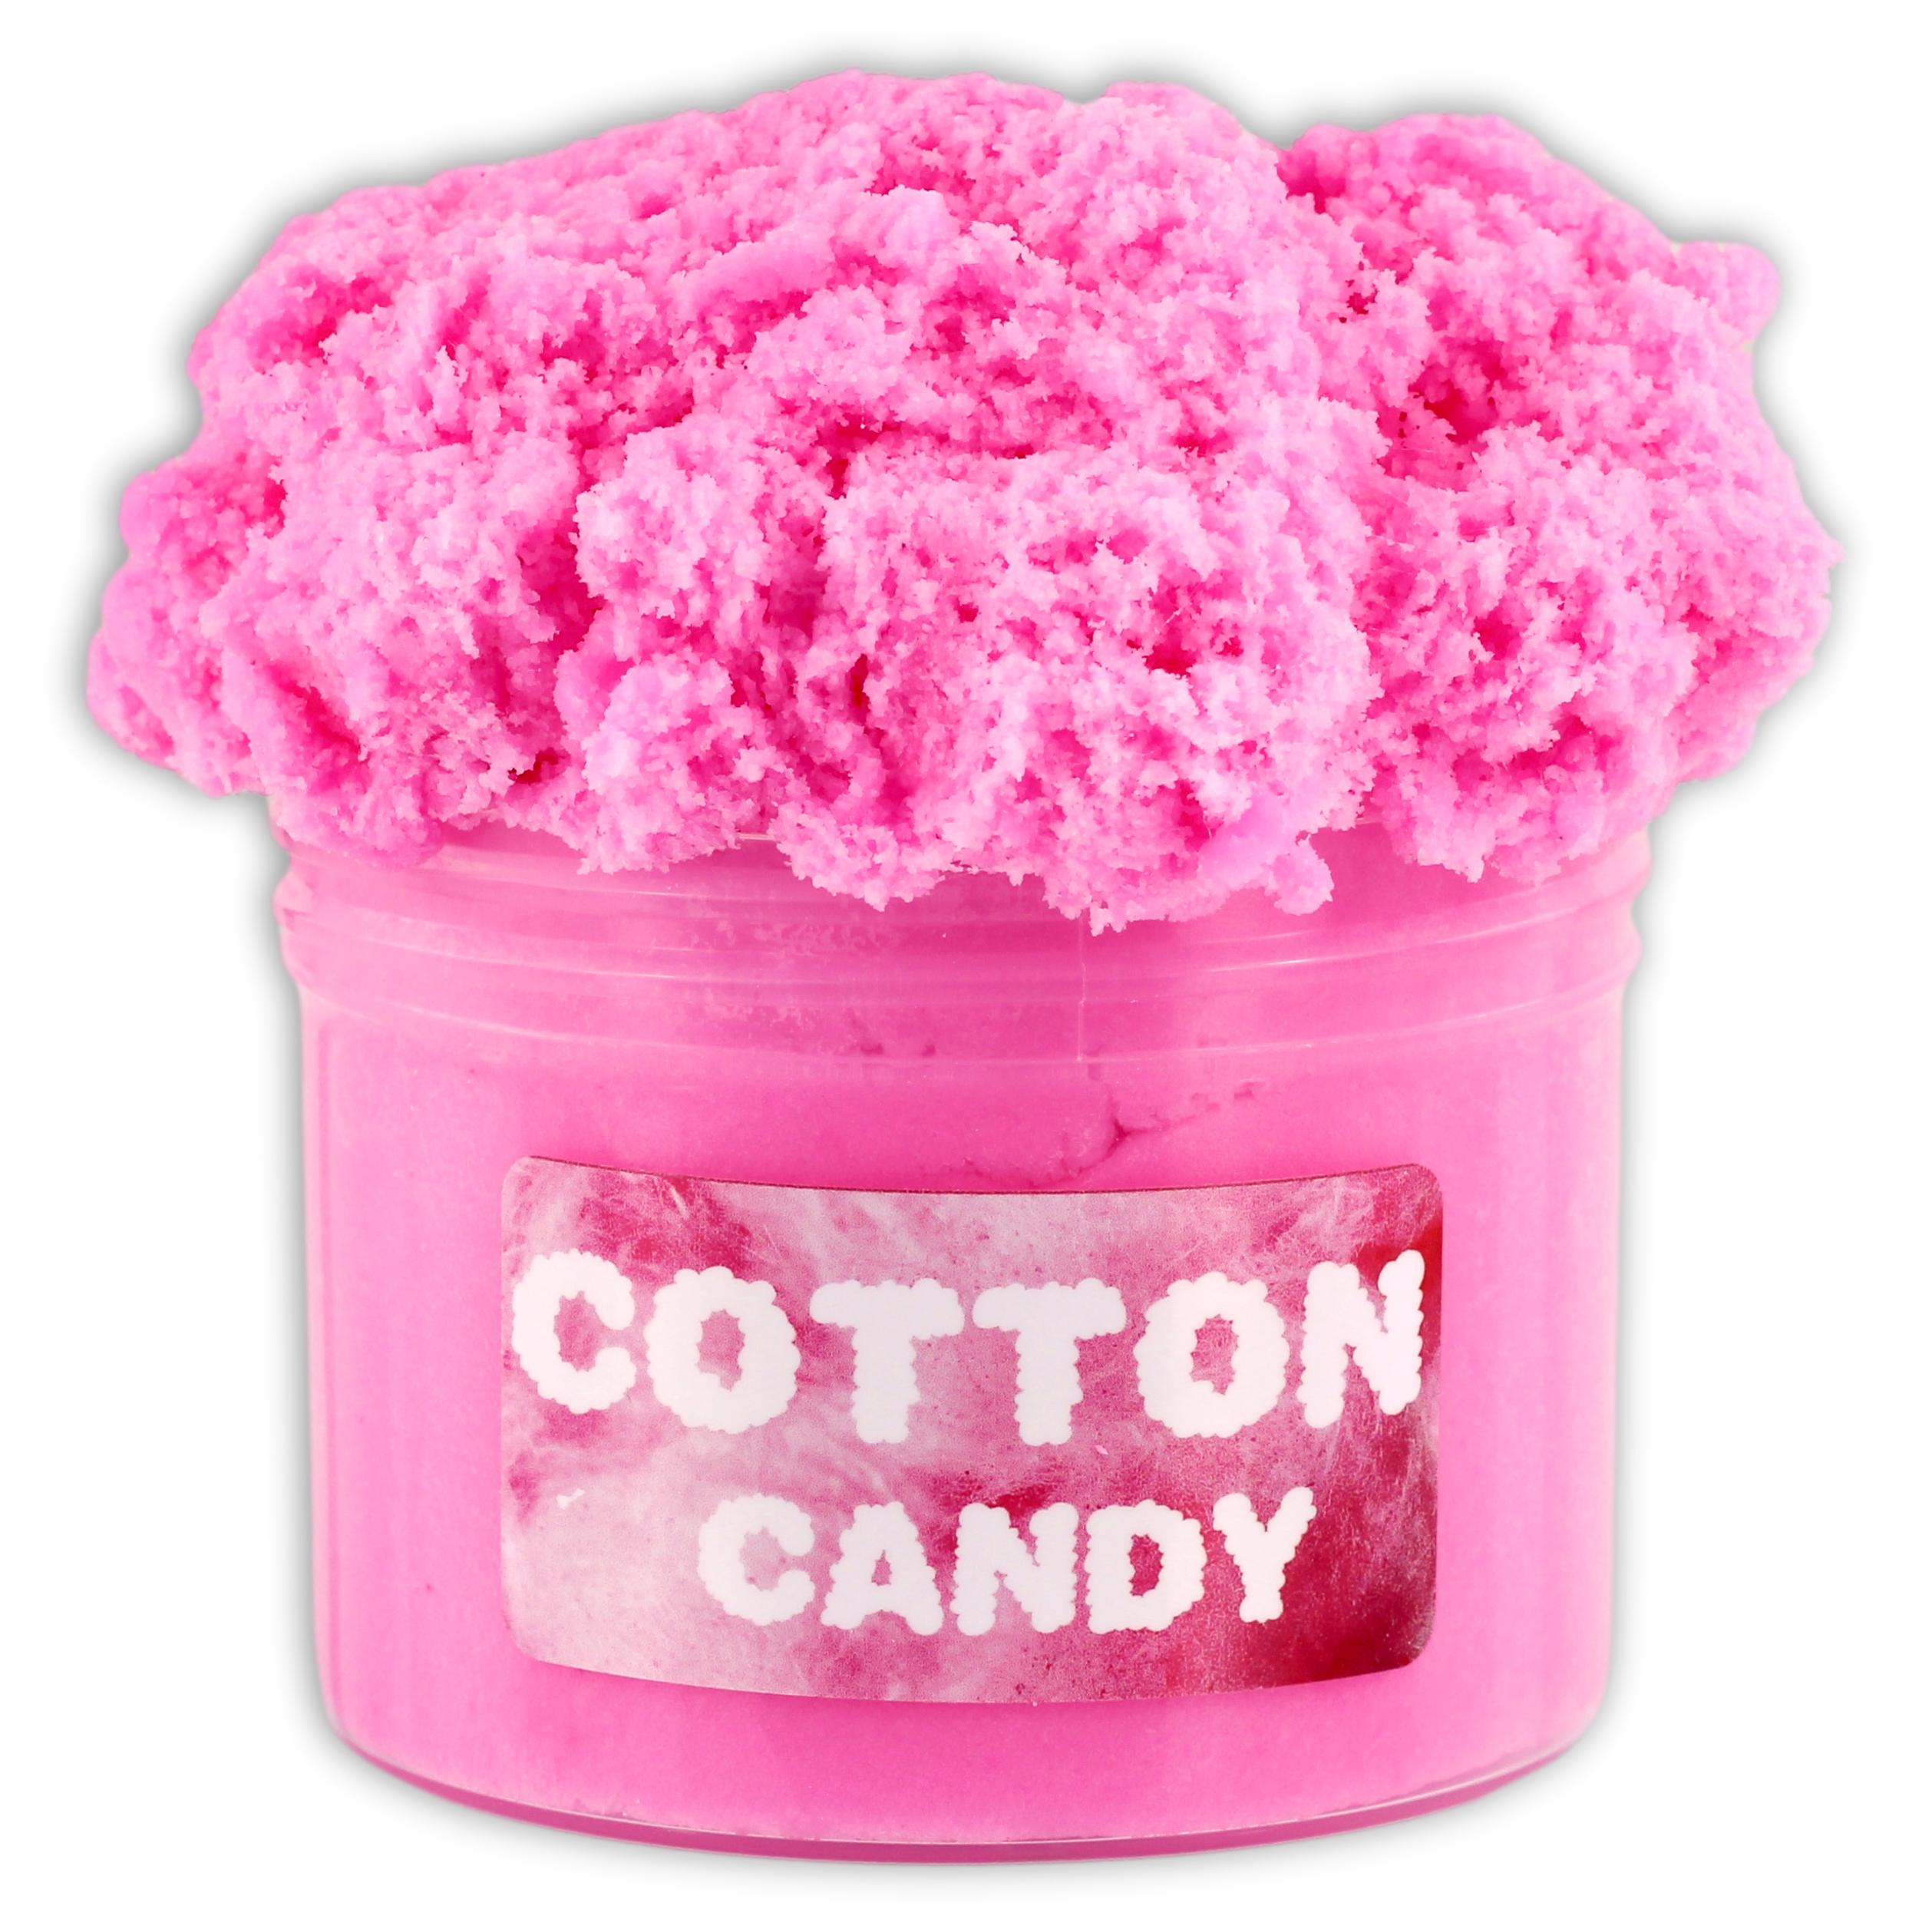 Cotton Candy - Wholesale Case